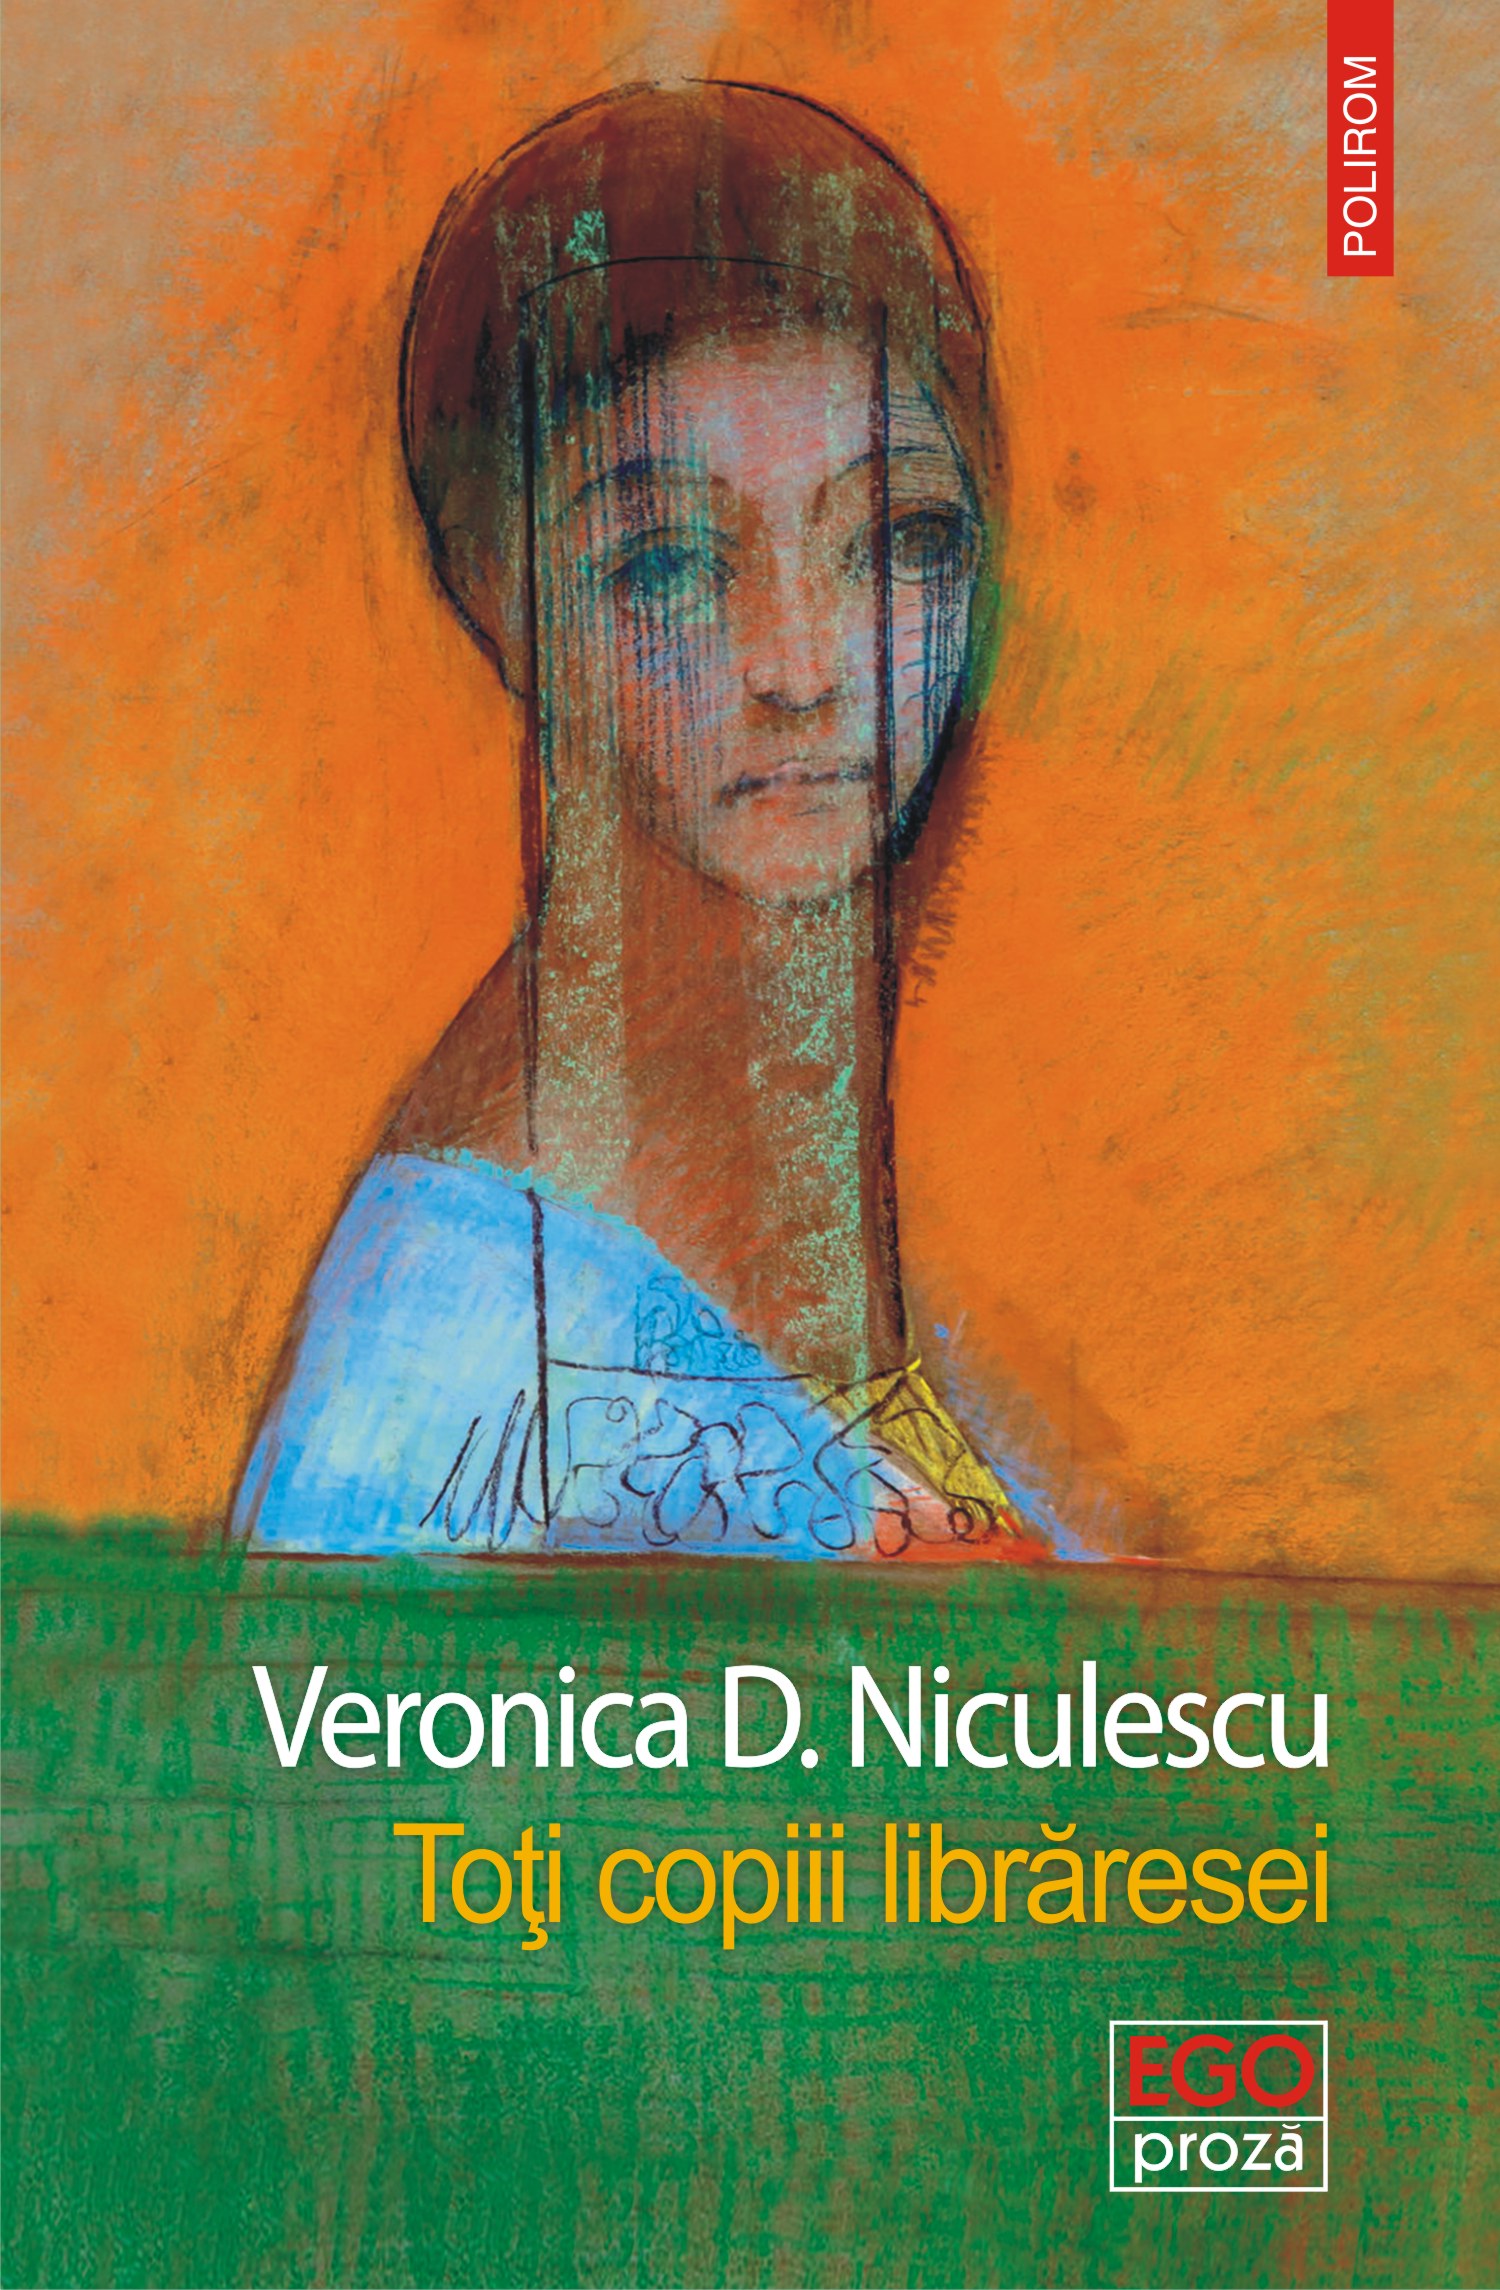 eBook Toti copiii libraresei - Veronica D. Niculescu